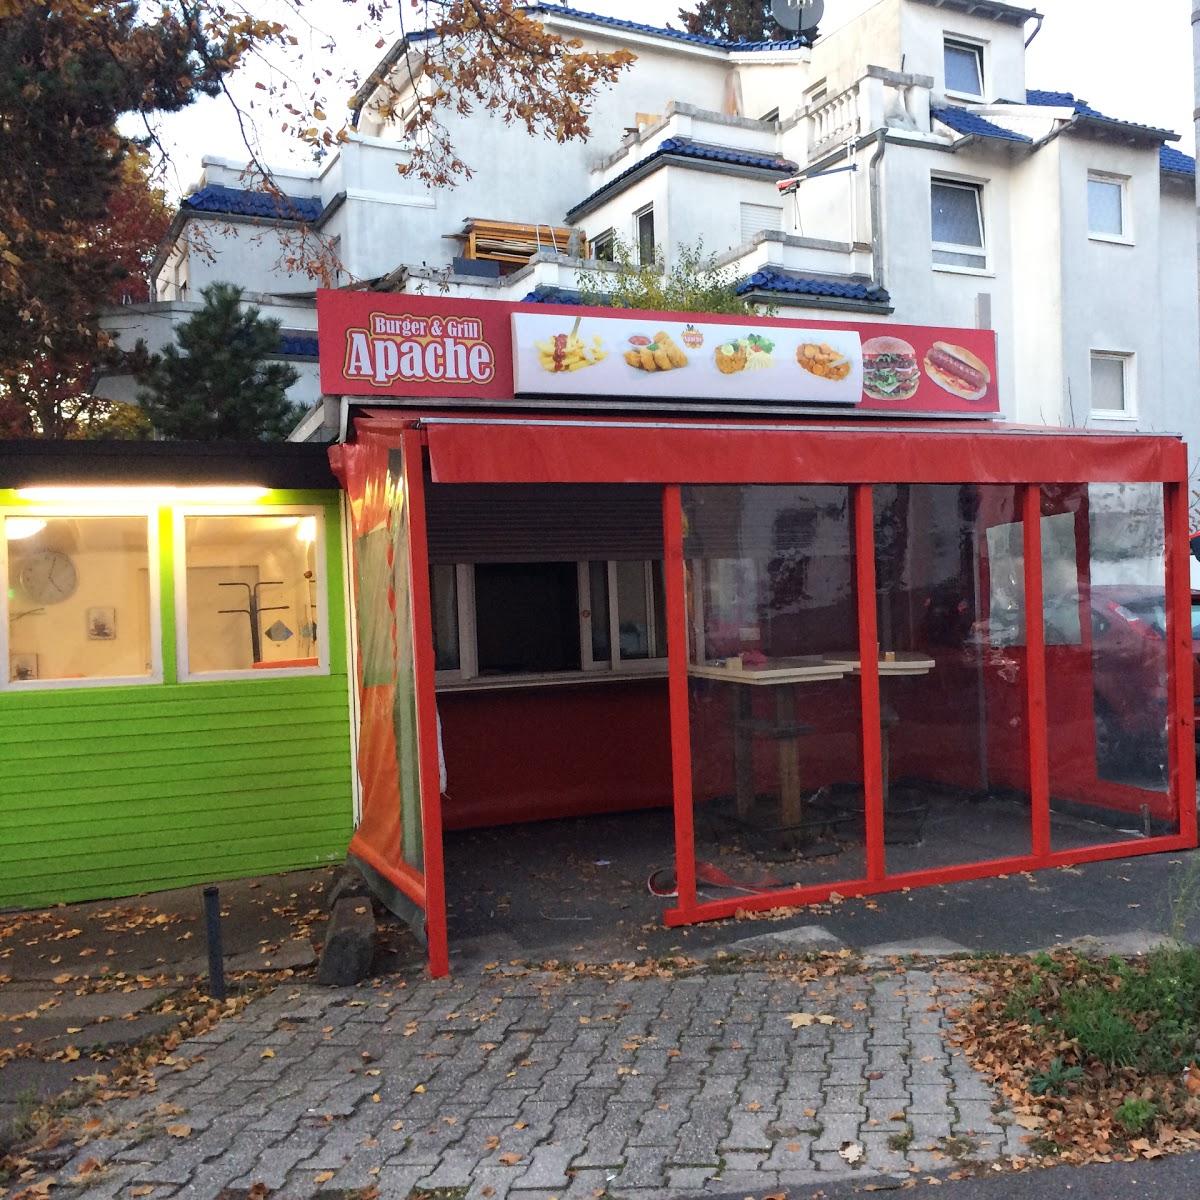 Restaurant "Apache Burger&Grill" in Bonn